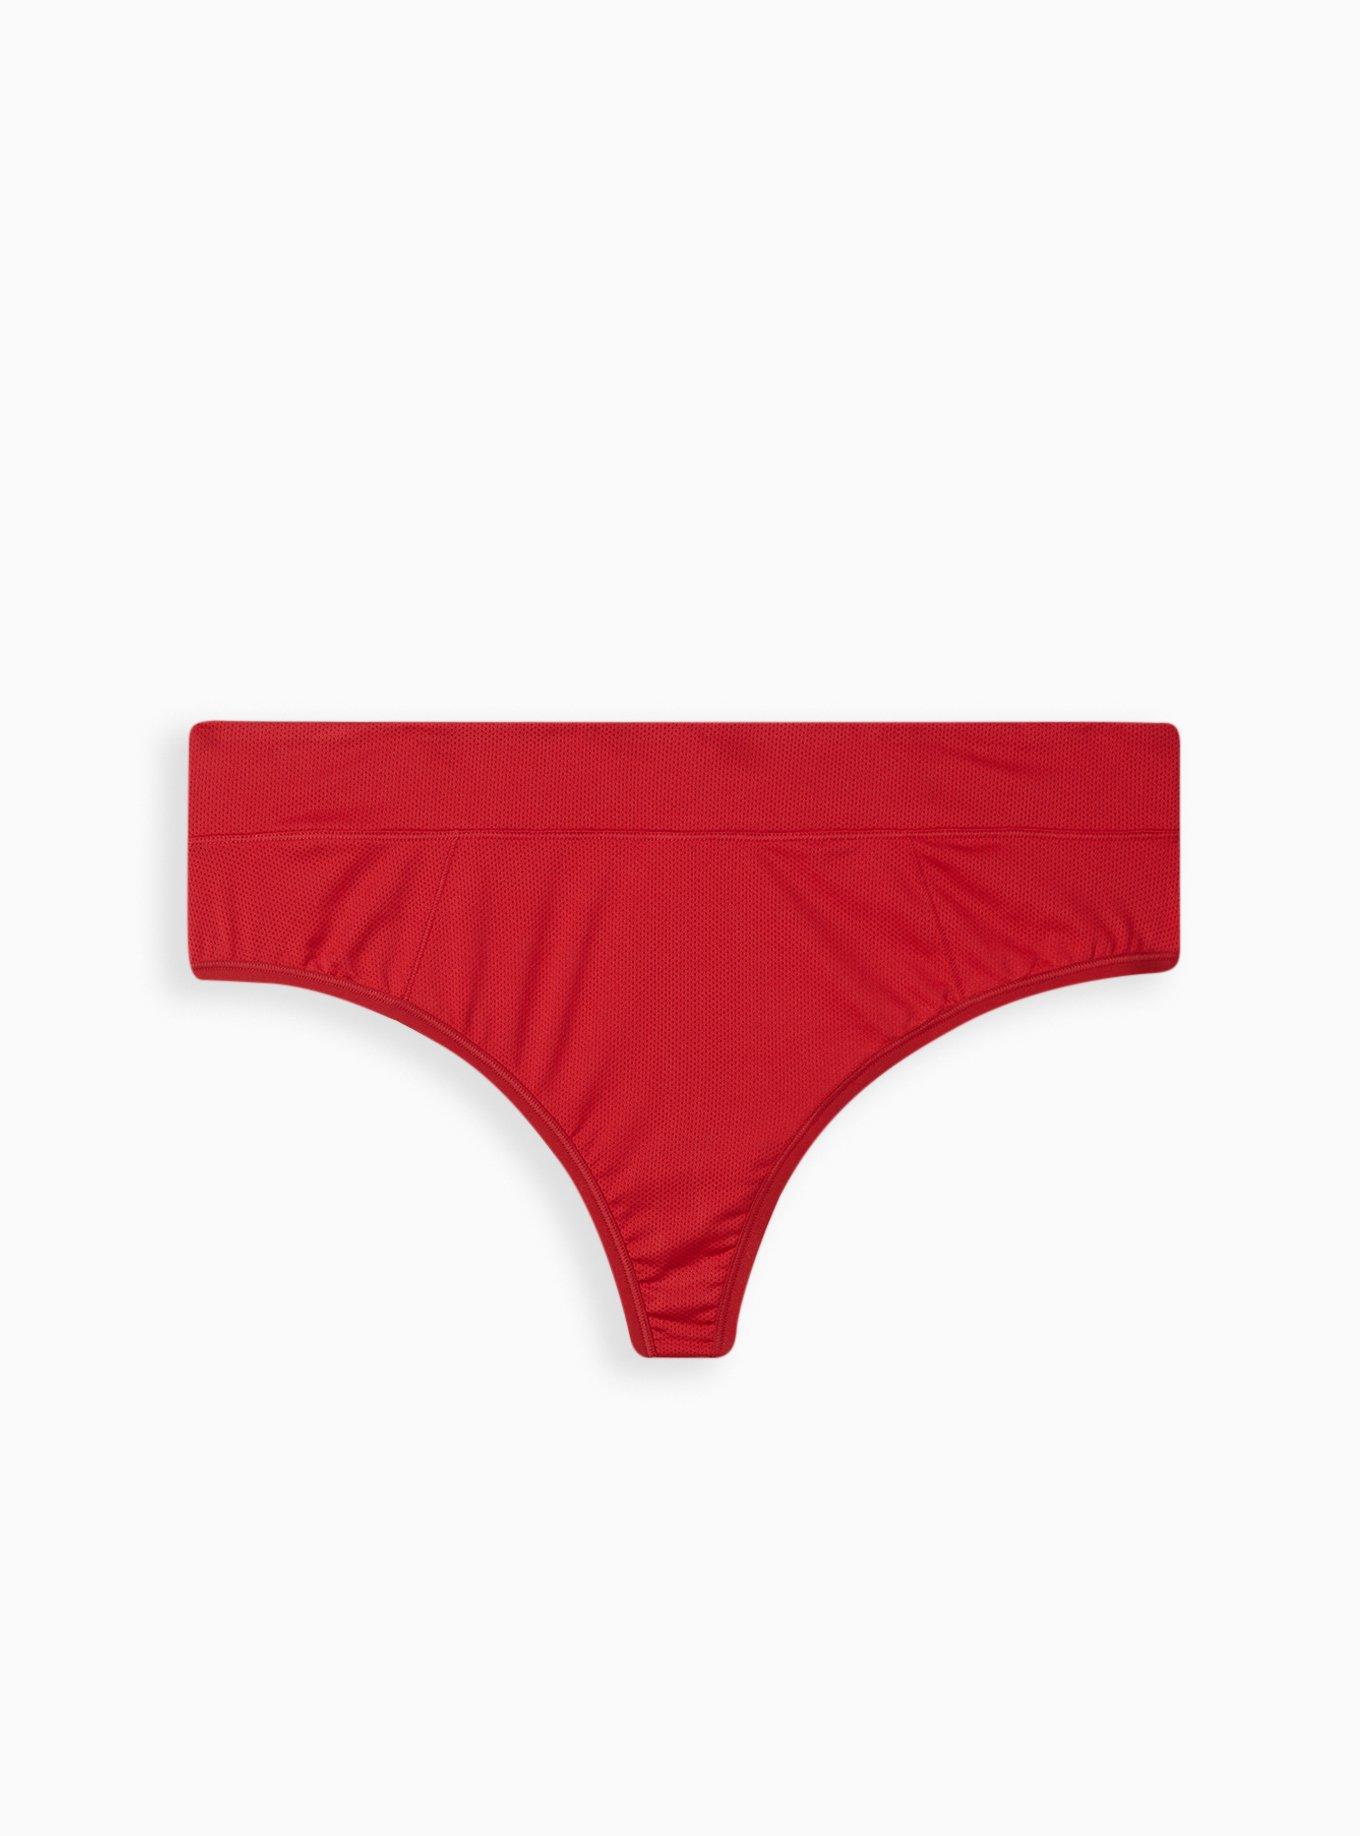 Glitter Underwear Women Underwear Mixed Color Summer Thin Mid